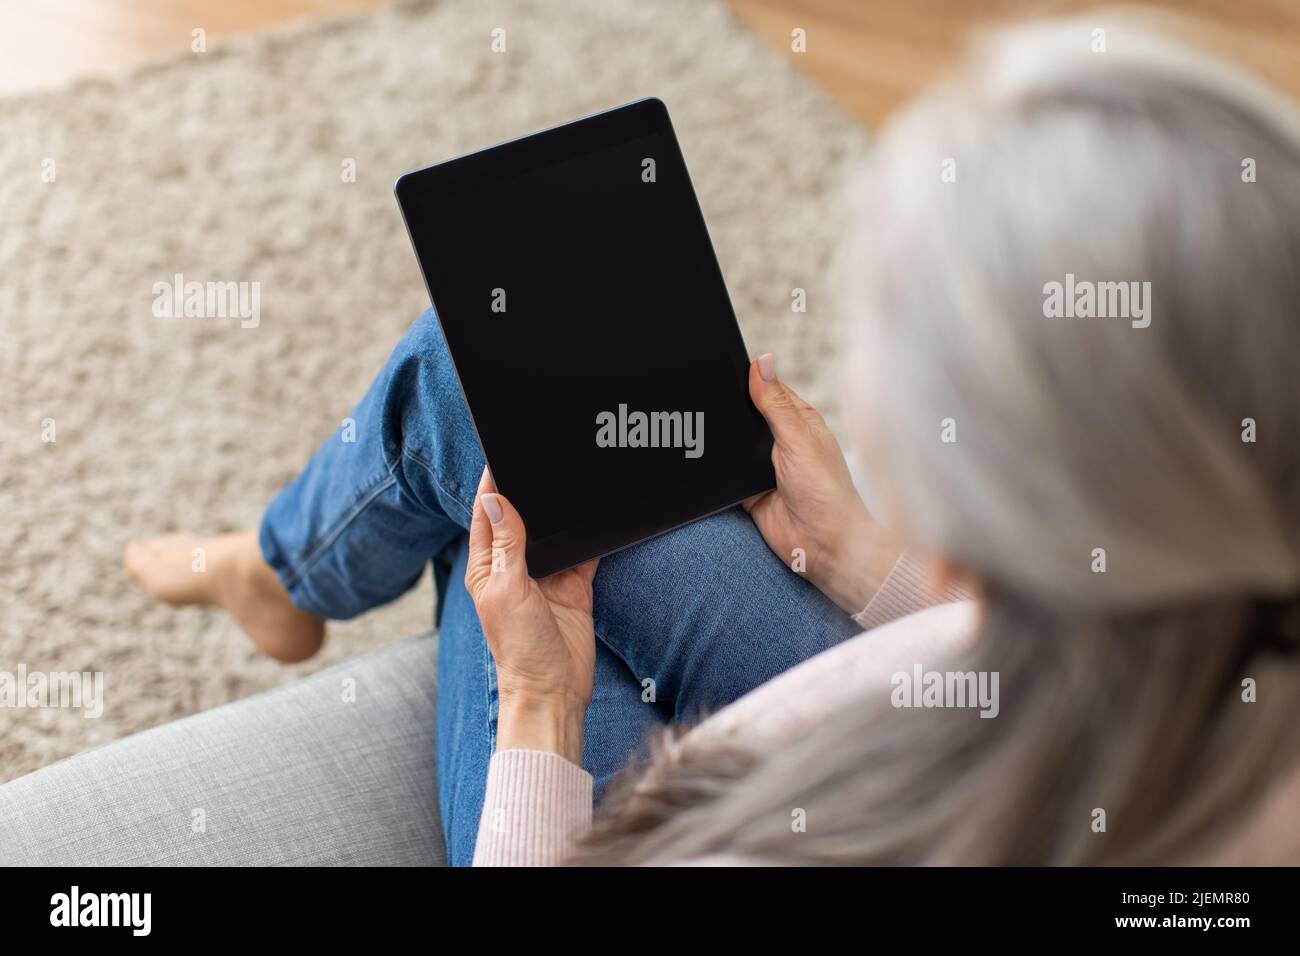 Une vieille dame européenne aux cheveux gris regarde une tablette avec écran vide, surfer sur Internet dans l'intérieur de la chambre Banque D'Images